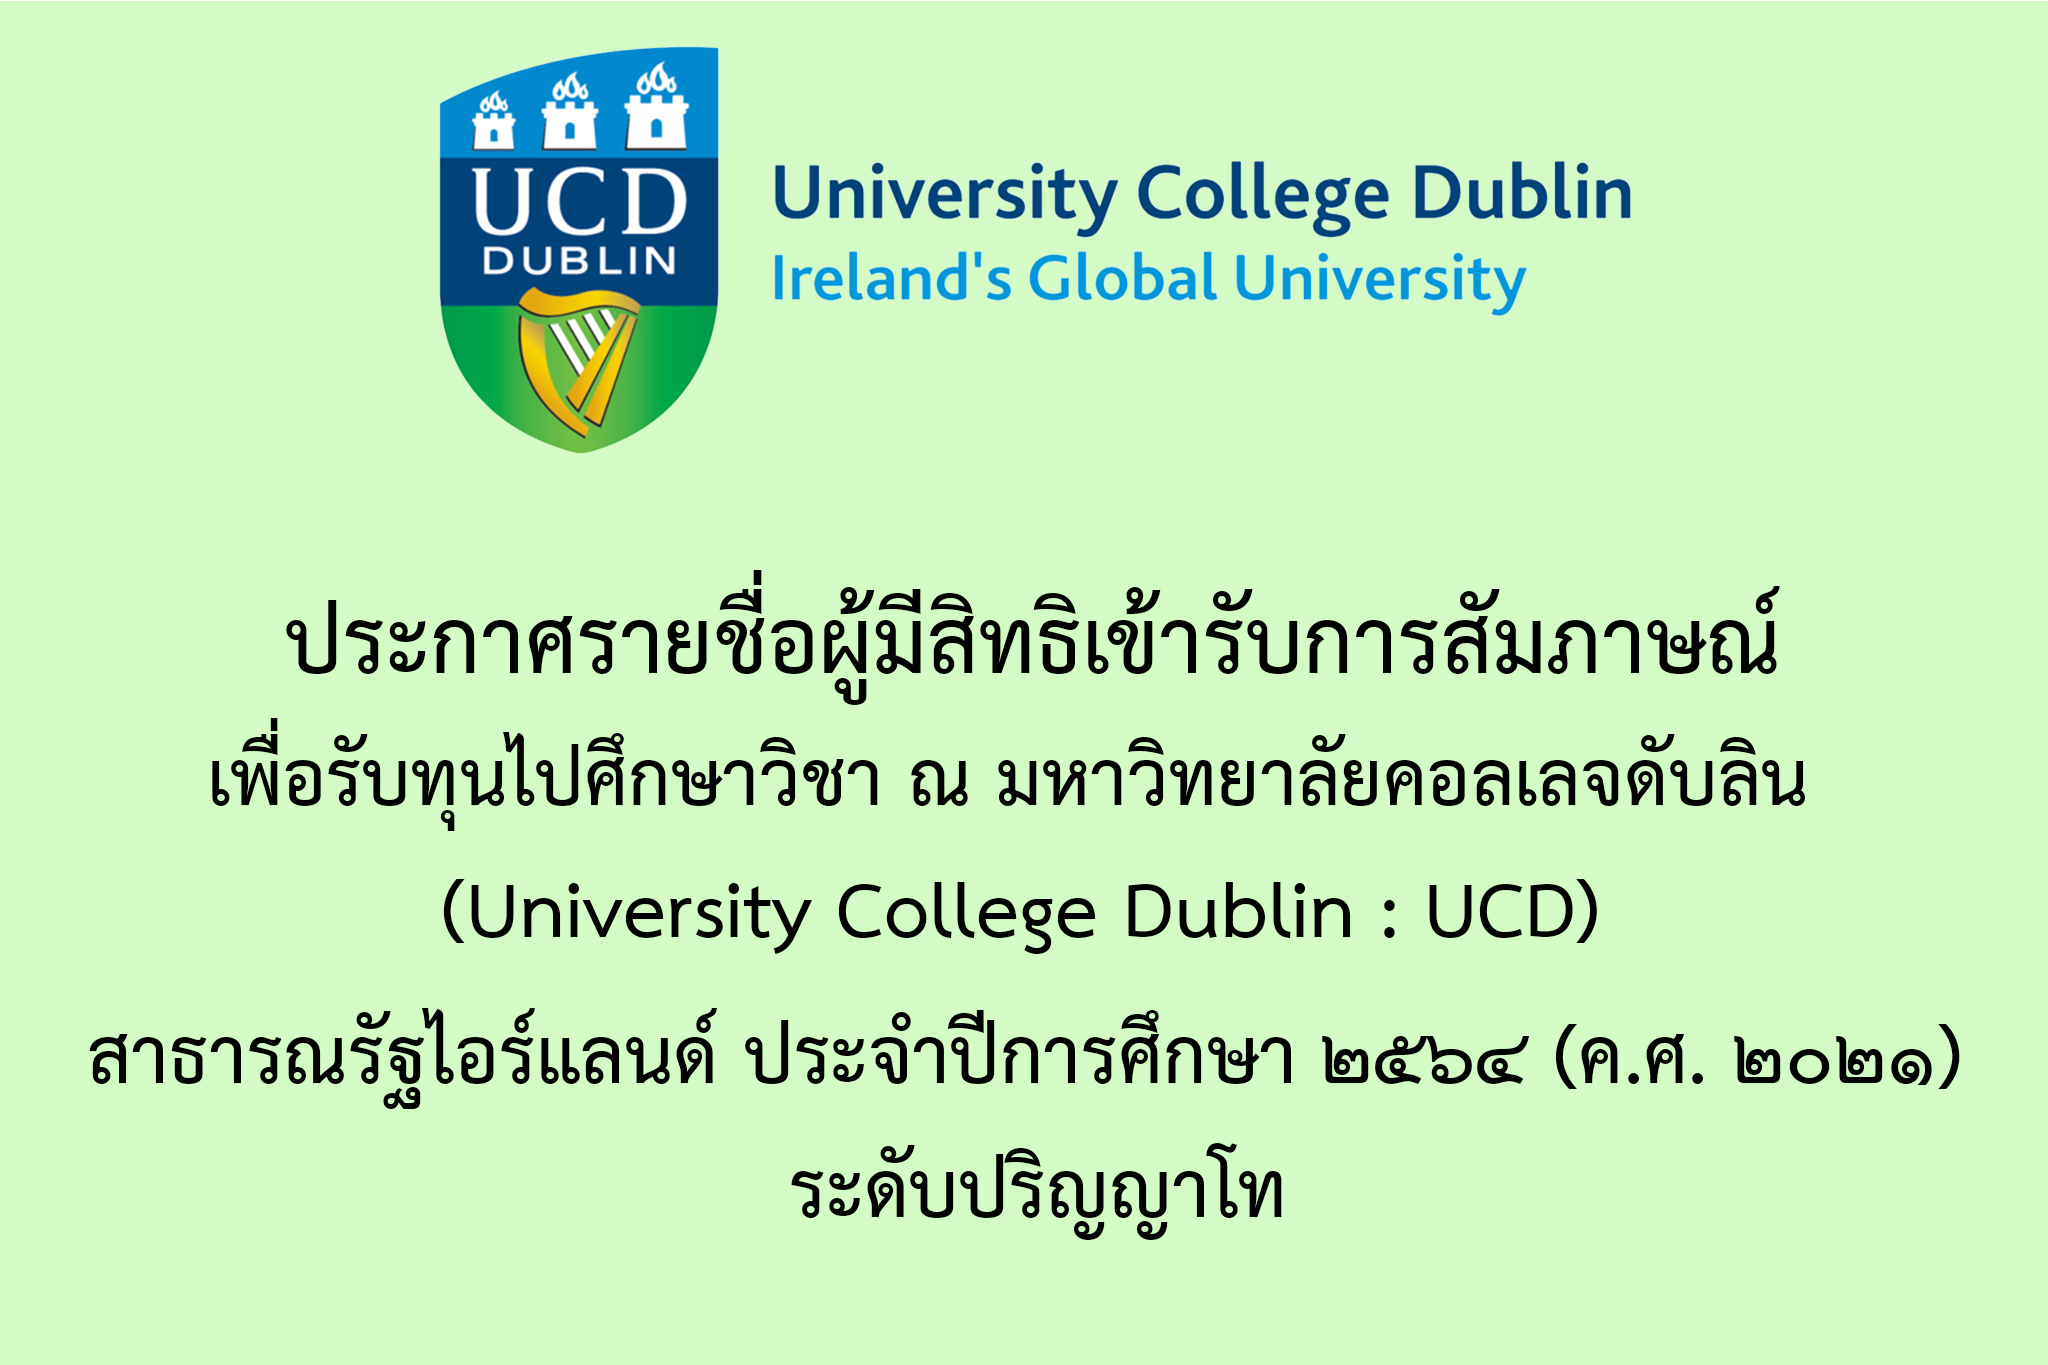 ประกาศรายชื่อผู้มีสิทธิเข้ารับการสัมภาษณ์เพื่อรับทุนการศึกษาไปศึกษาวิชา ณ มหาวิทยาลัยคอลเลจดับลิน (University College Dublin : UCD) ประจำปีการศึกษา ๒๕๖๖